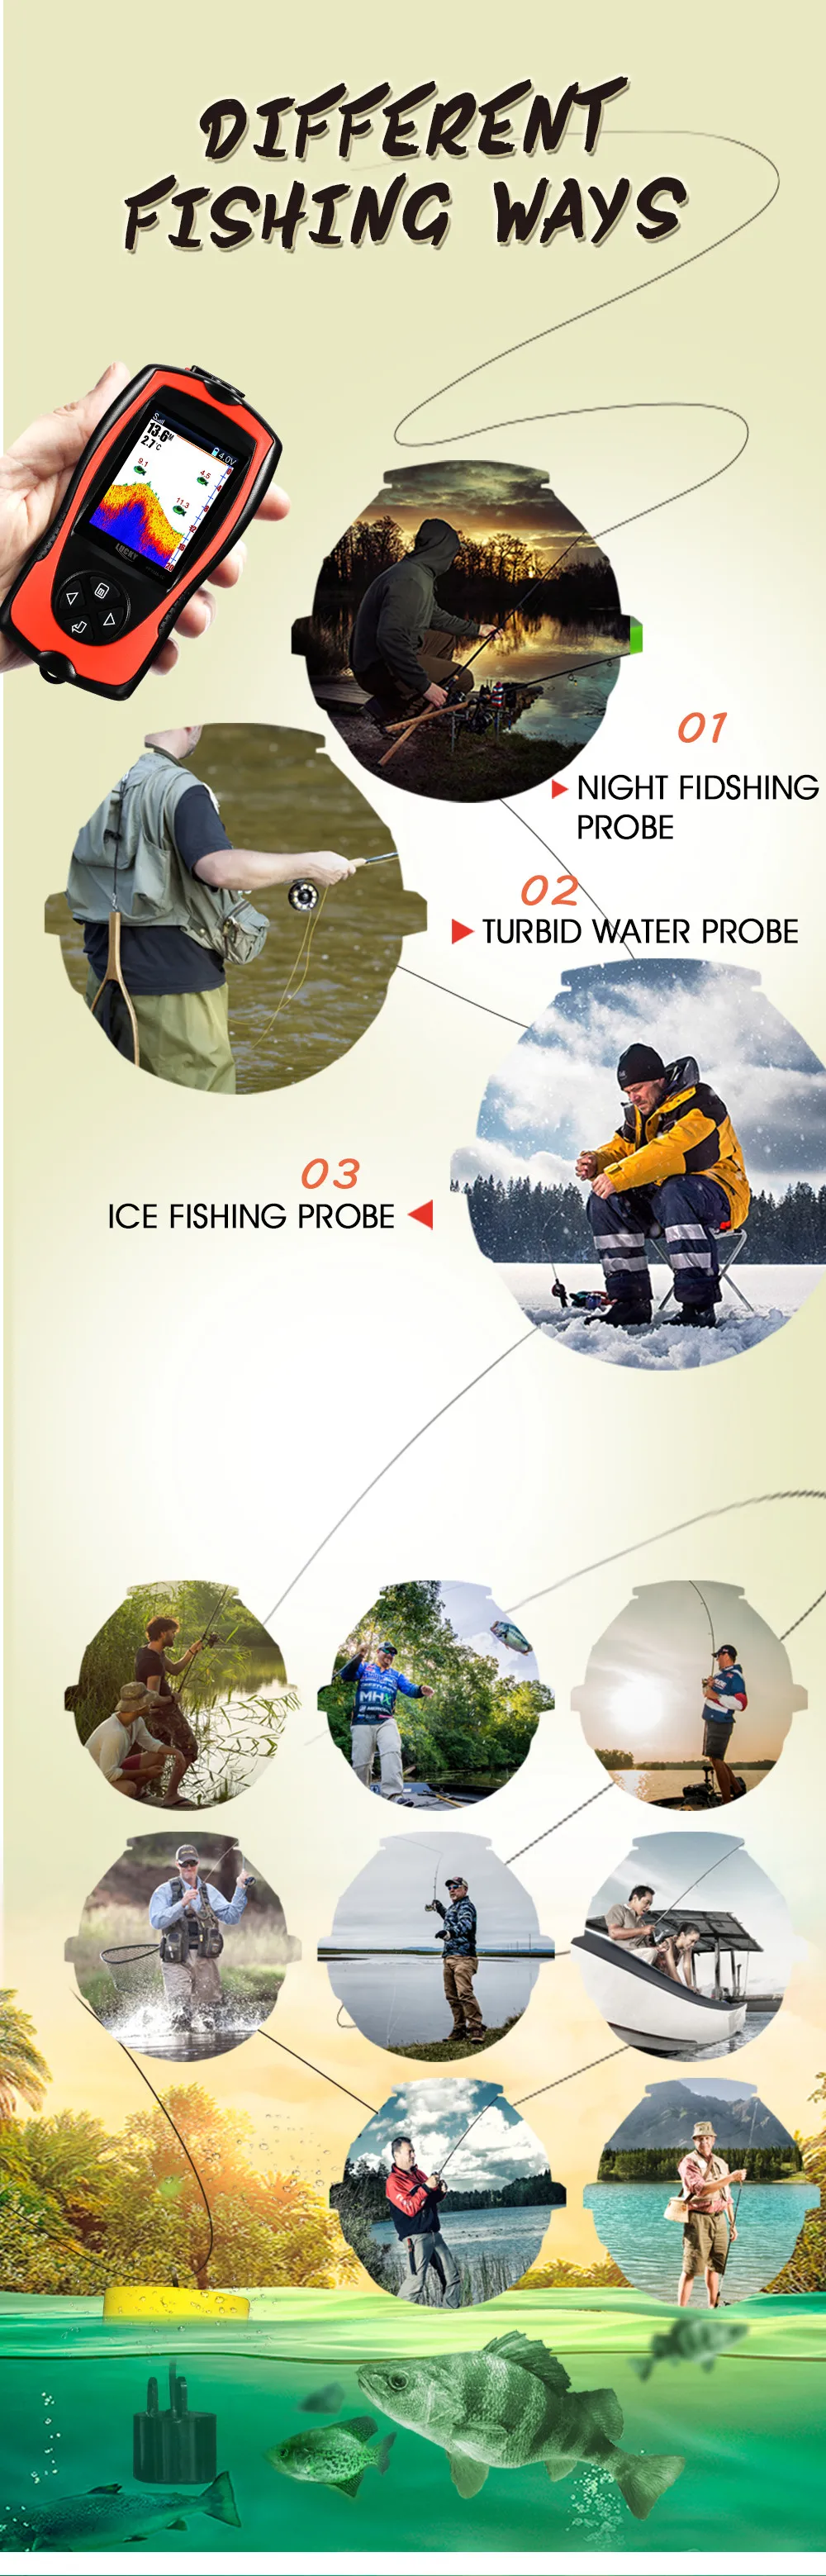 LUCKY FF1108-1CT, портативный эхолот, рыболокатор с сигнализацией, водостойкий эхолот, эхолот, рыболокатор, ЖК-экран, лед